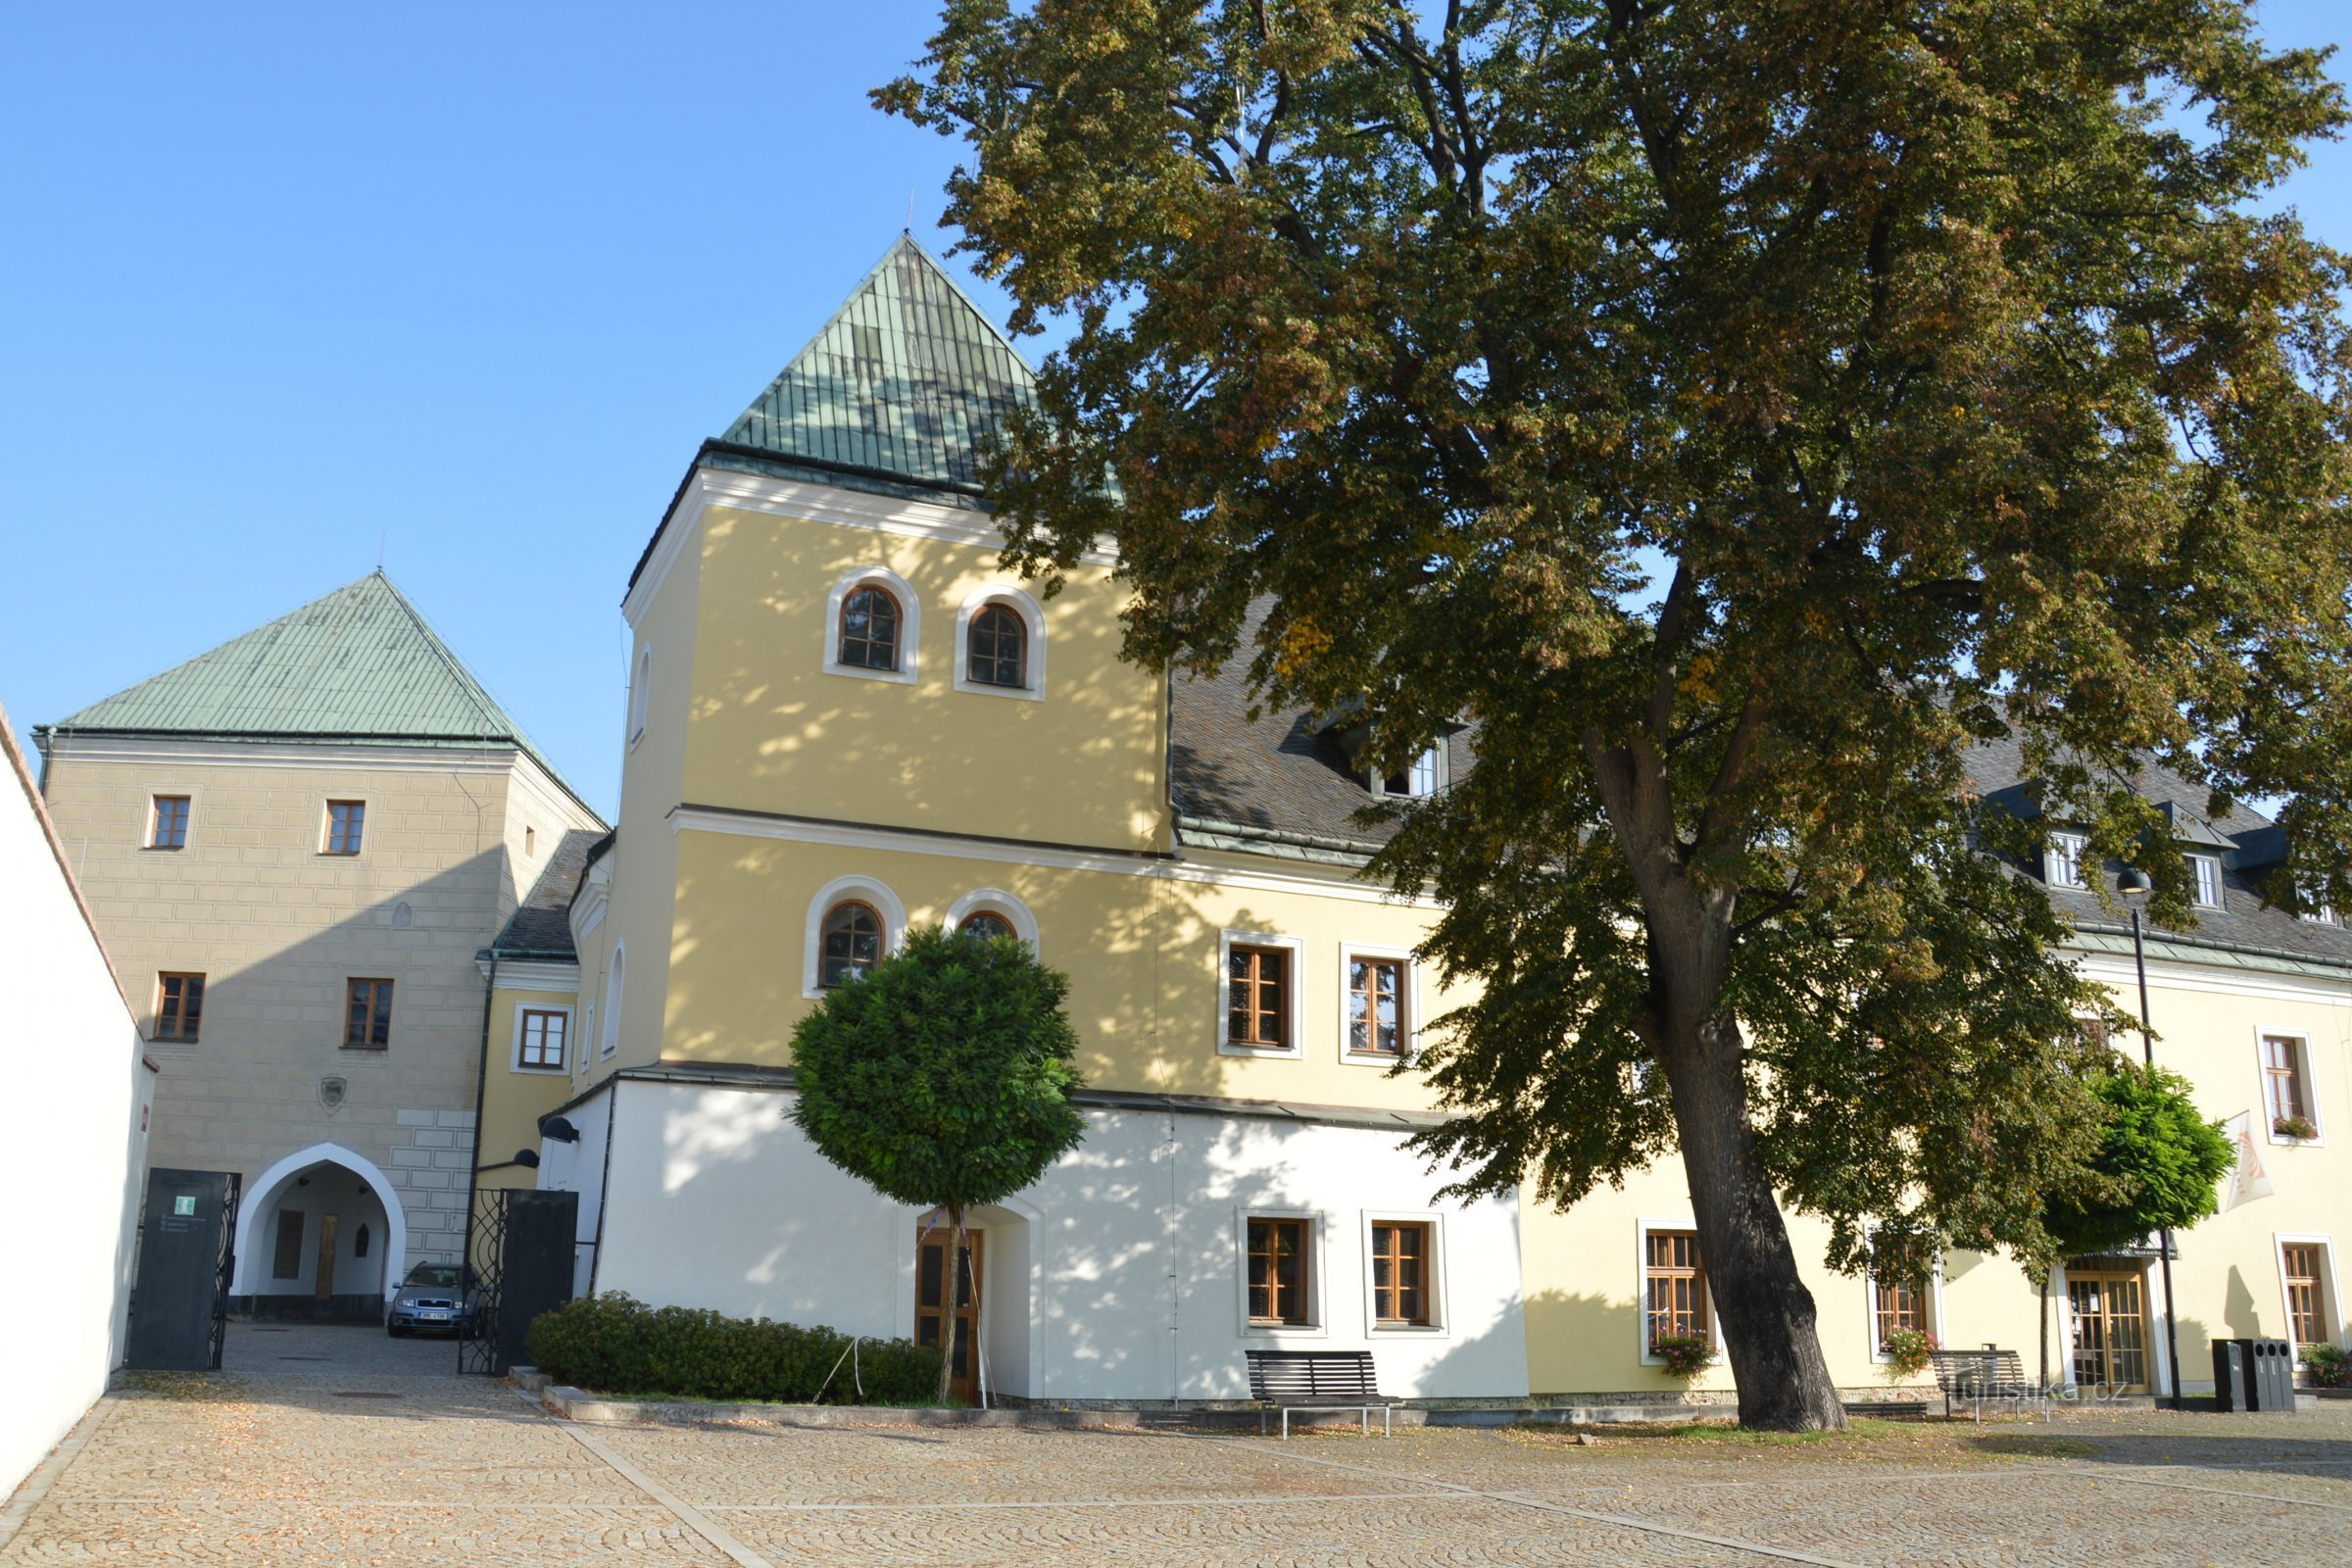 Velká Bystřice, onderdeel van het kasteel